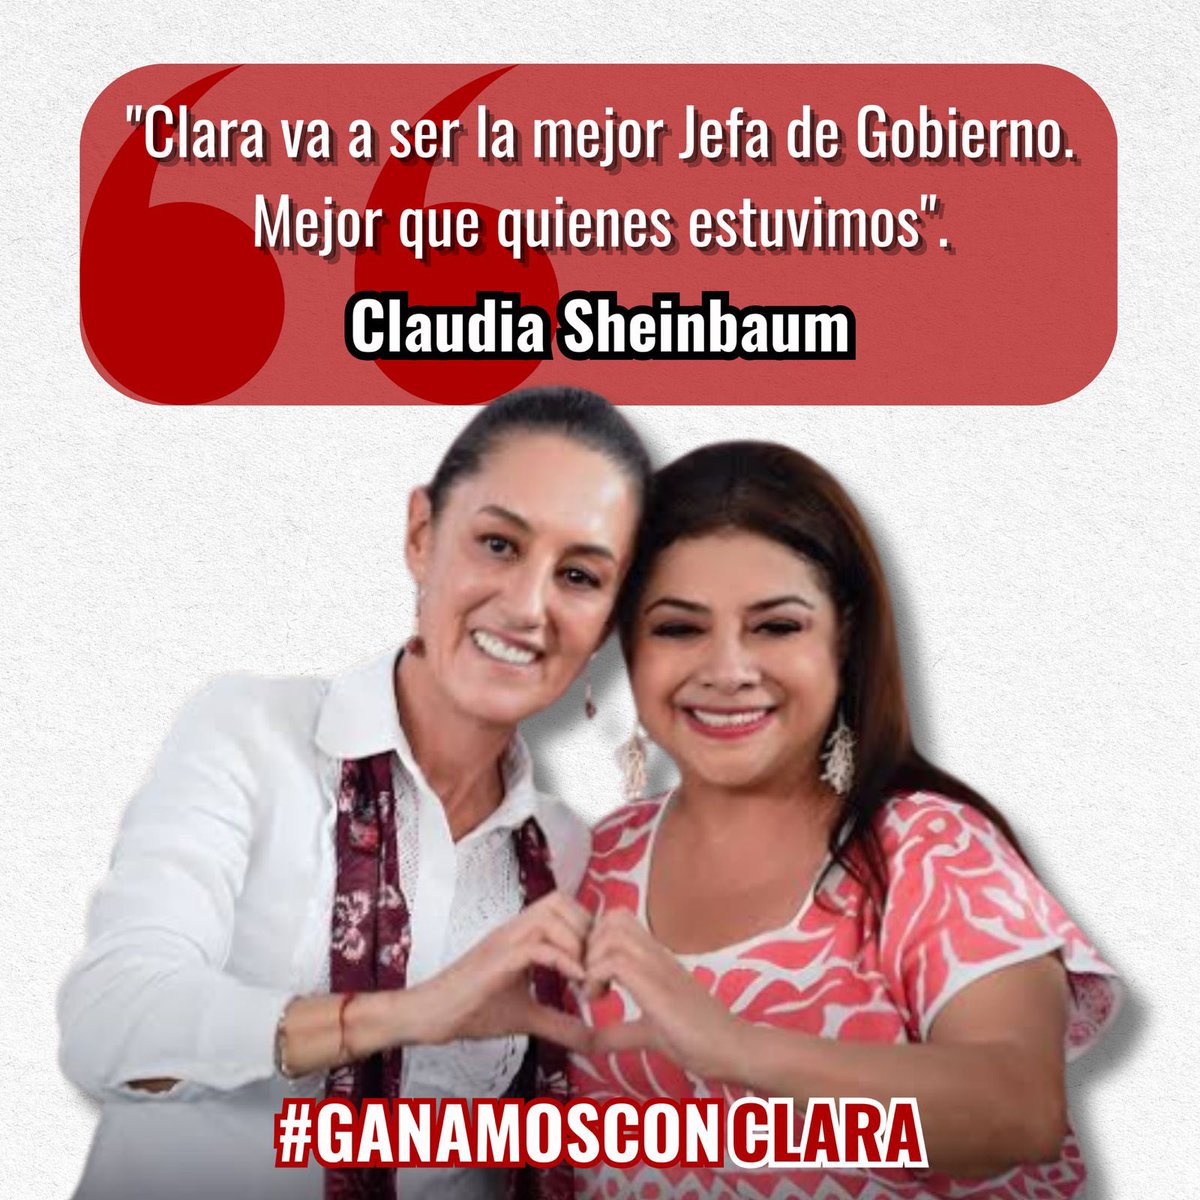 #GanamosConClara #ClaraJefaDeGobierno